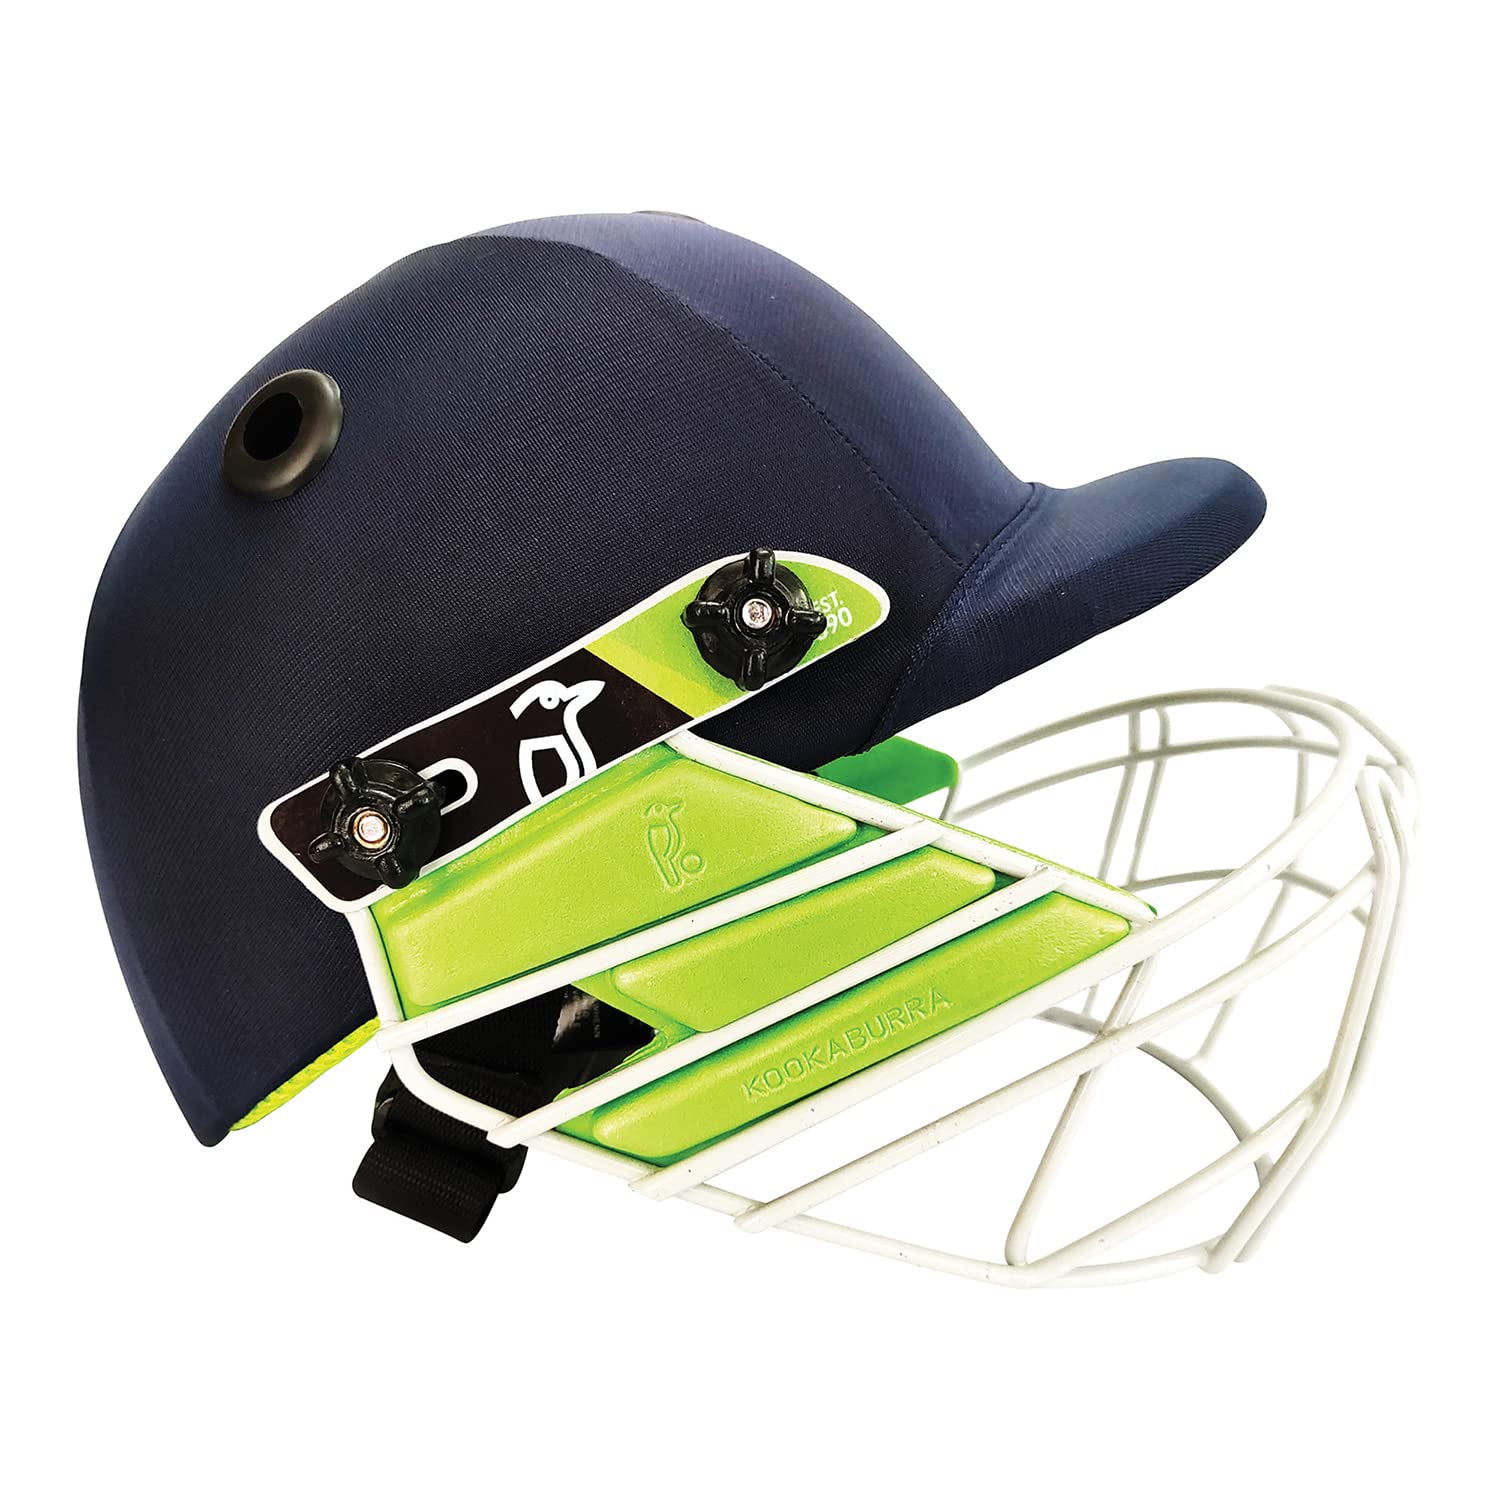 Kookaburra Pro 100 Cricket Helmet - Best Price online Prokicksports.com